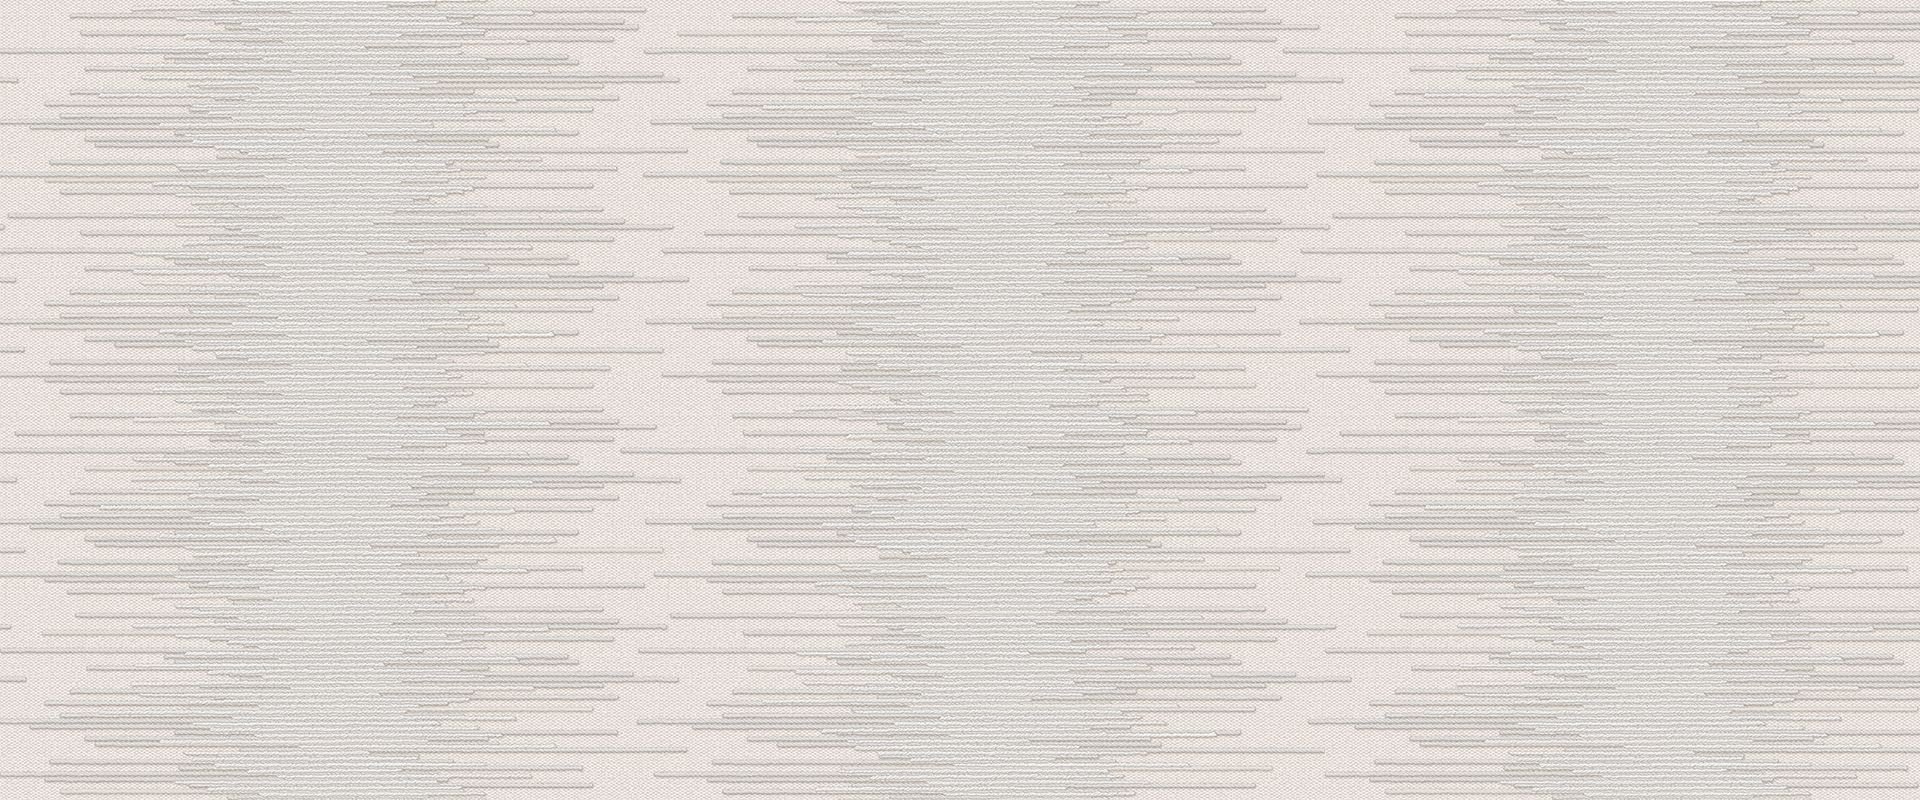 Обои из коллекции Мотив HORIZONT 889478, цвет: Серый, размер 1.06*10.05 м